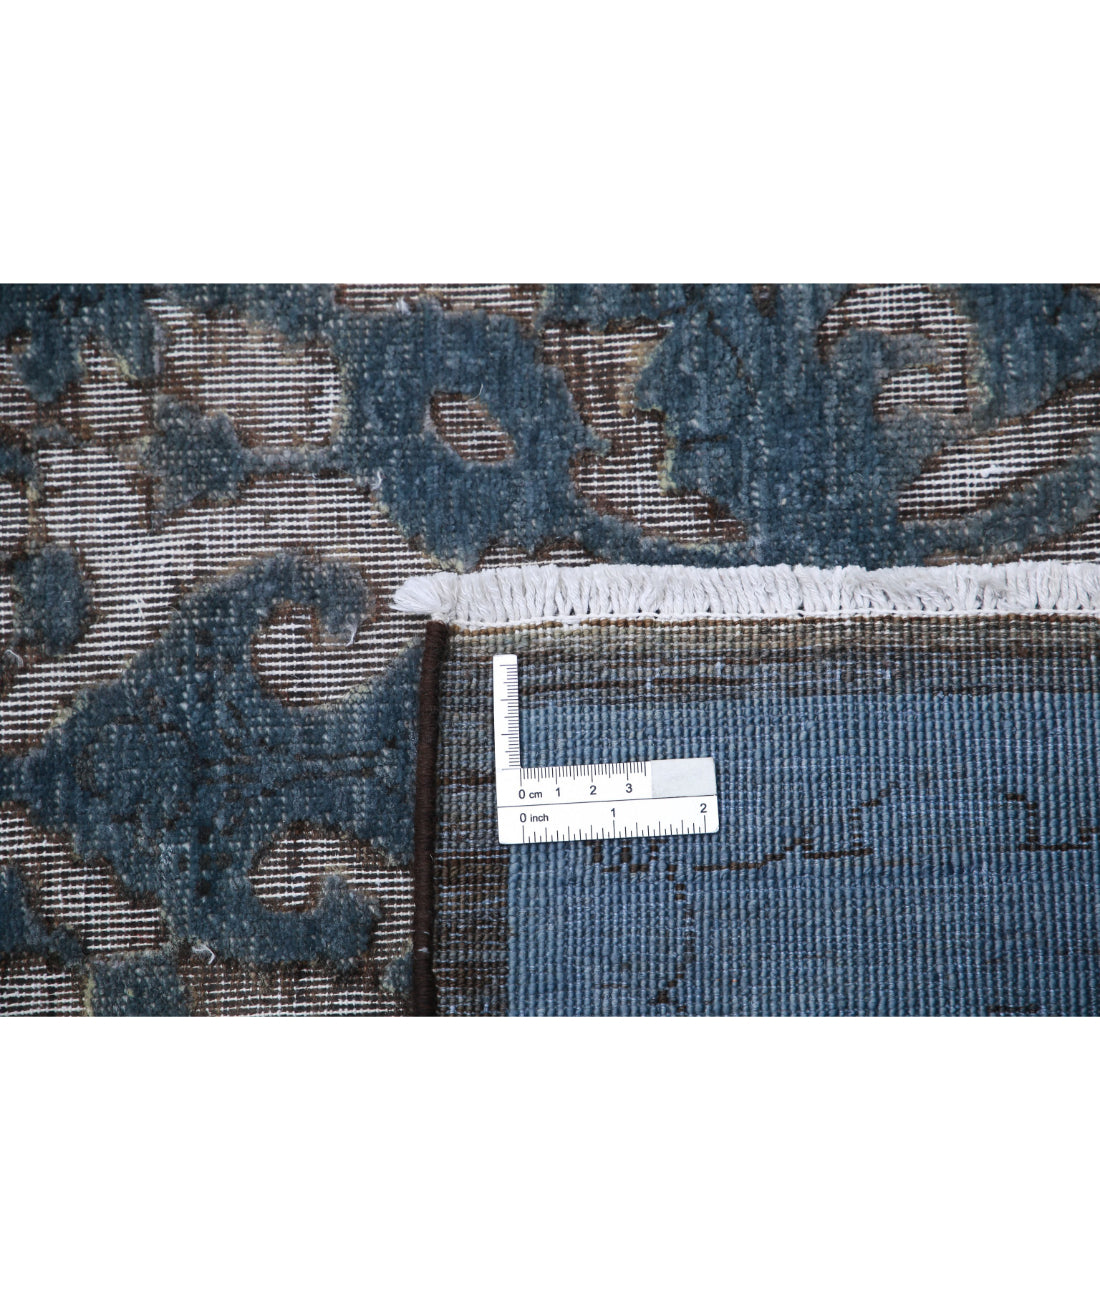 Hand Knotted Onyx Wool Rug - 6'1'' x 8'9'' 6'1'' x 8'9'' (183 X 263) / Grey / Grey